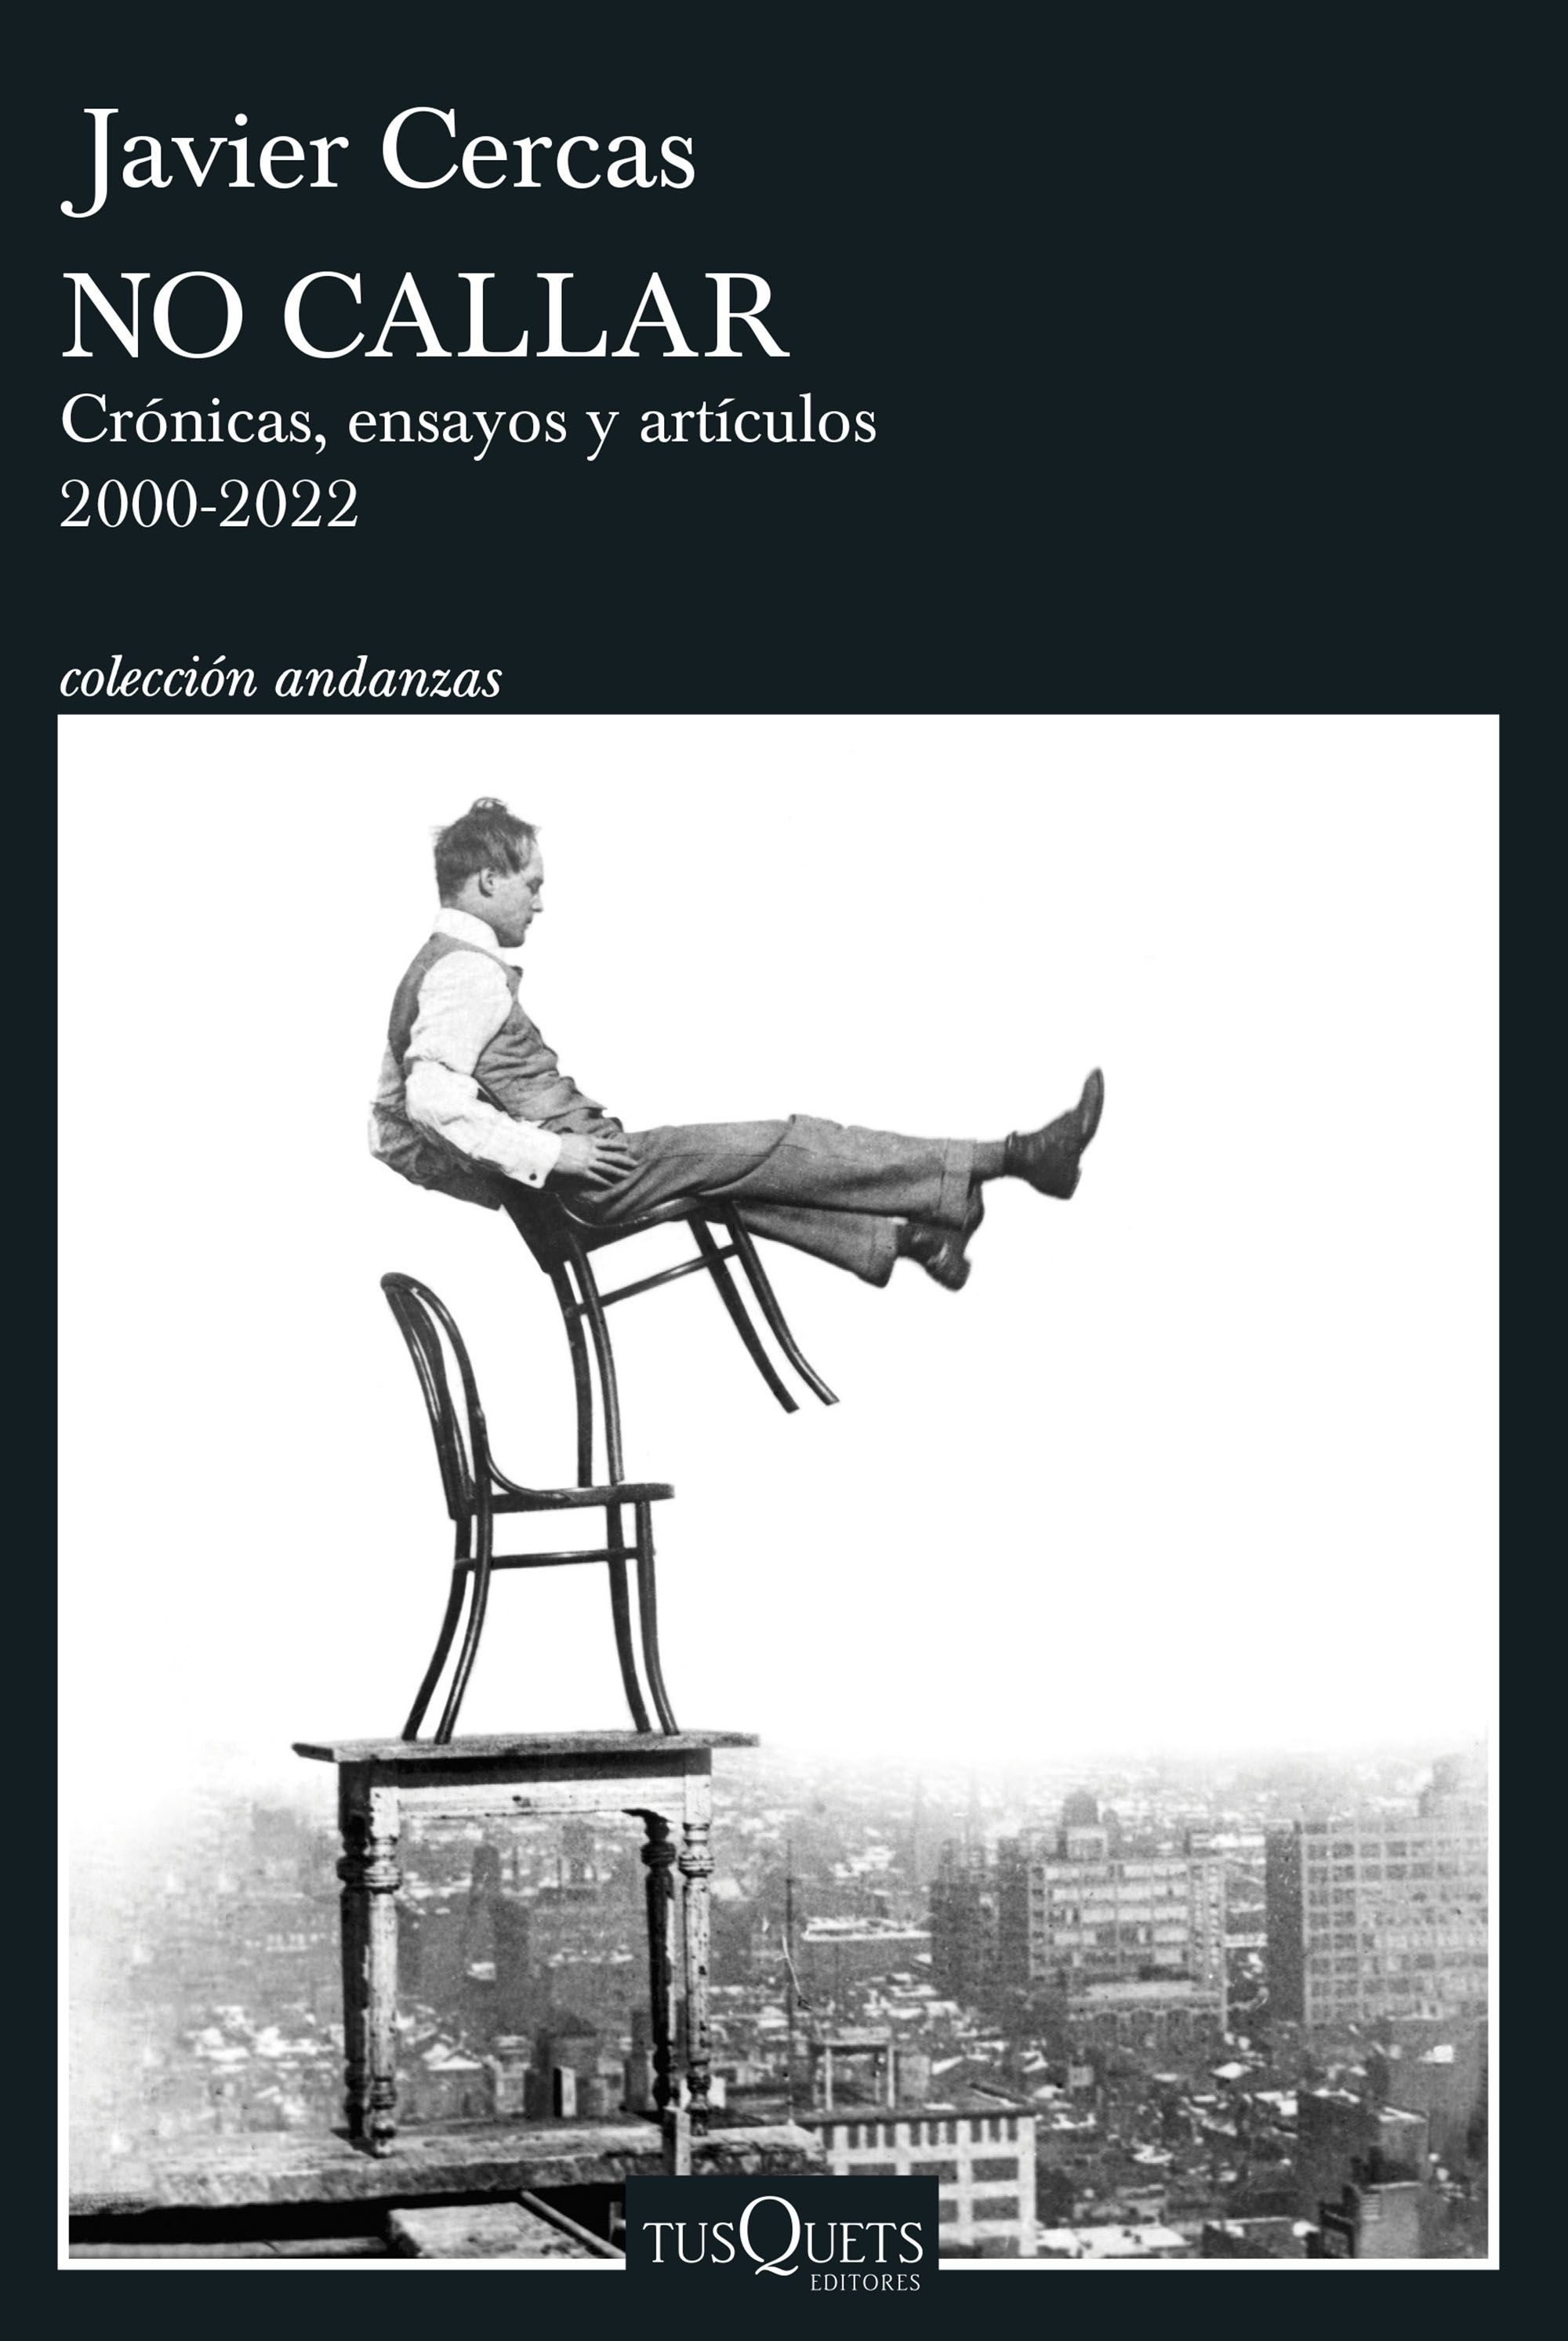 No callar "Crónicas, ensayos y artículos. 2000-2022". 